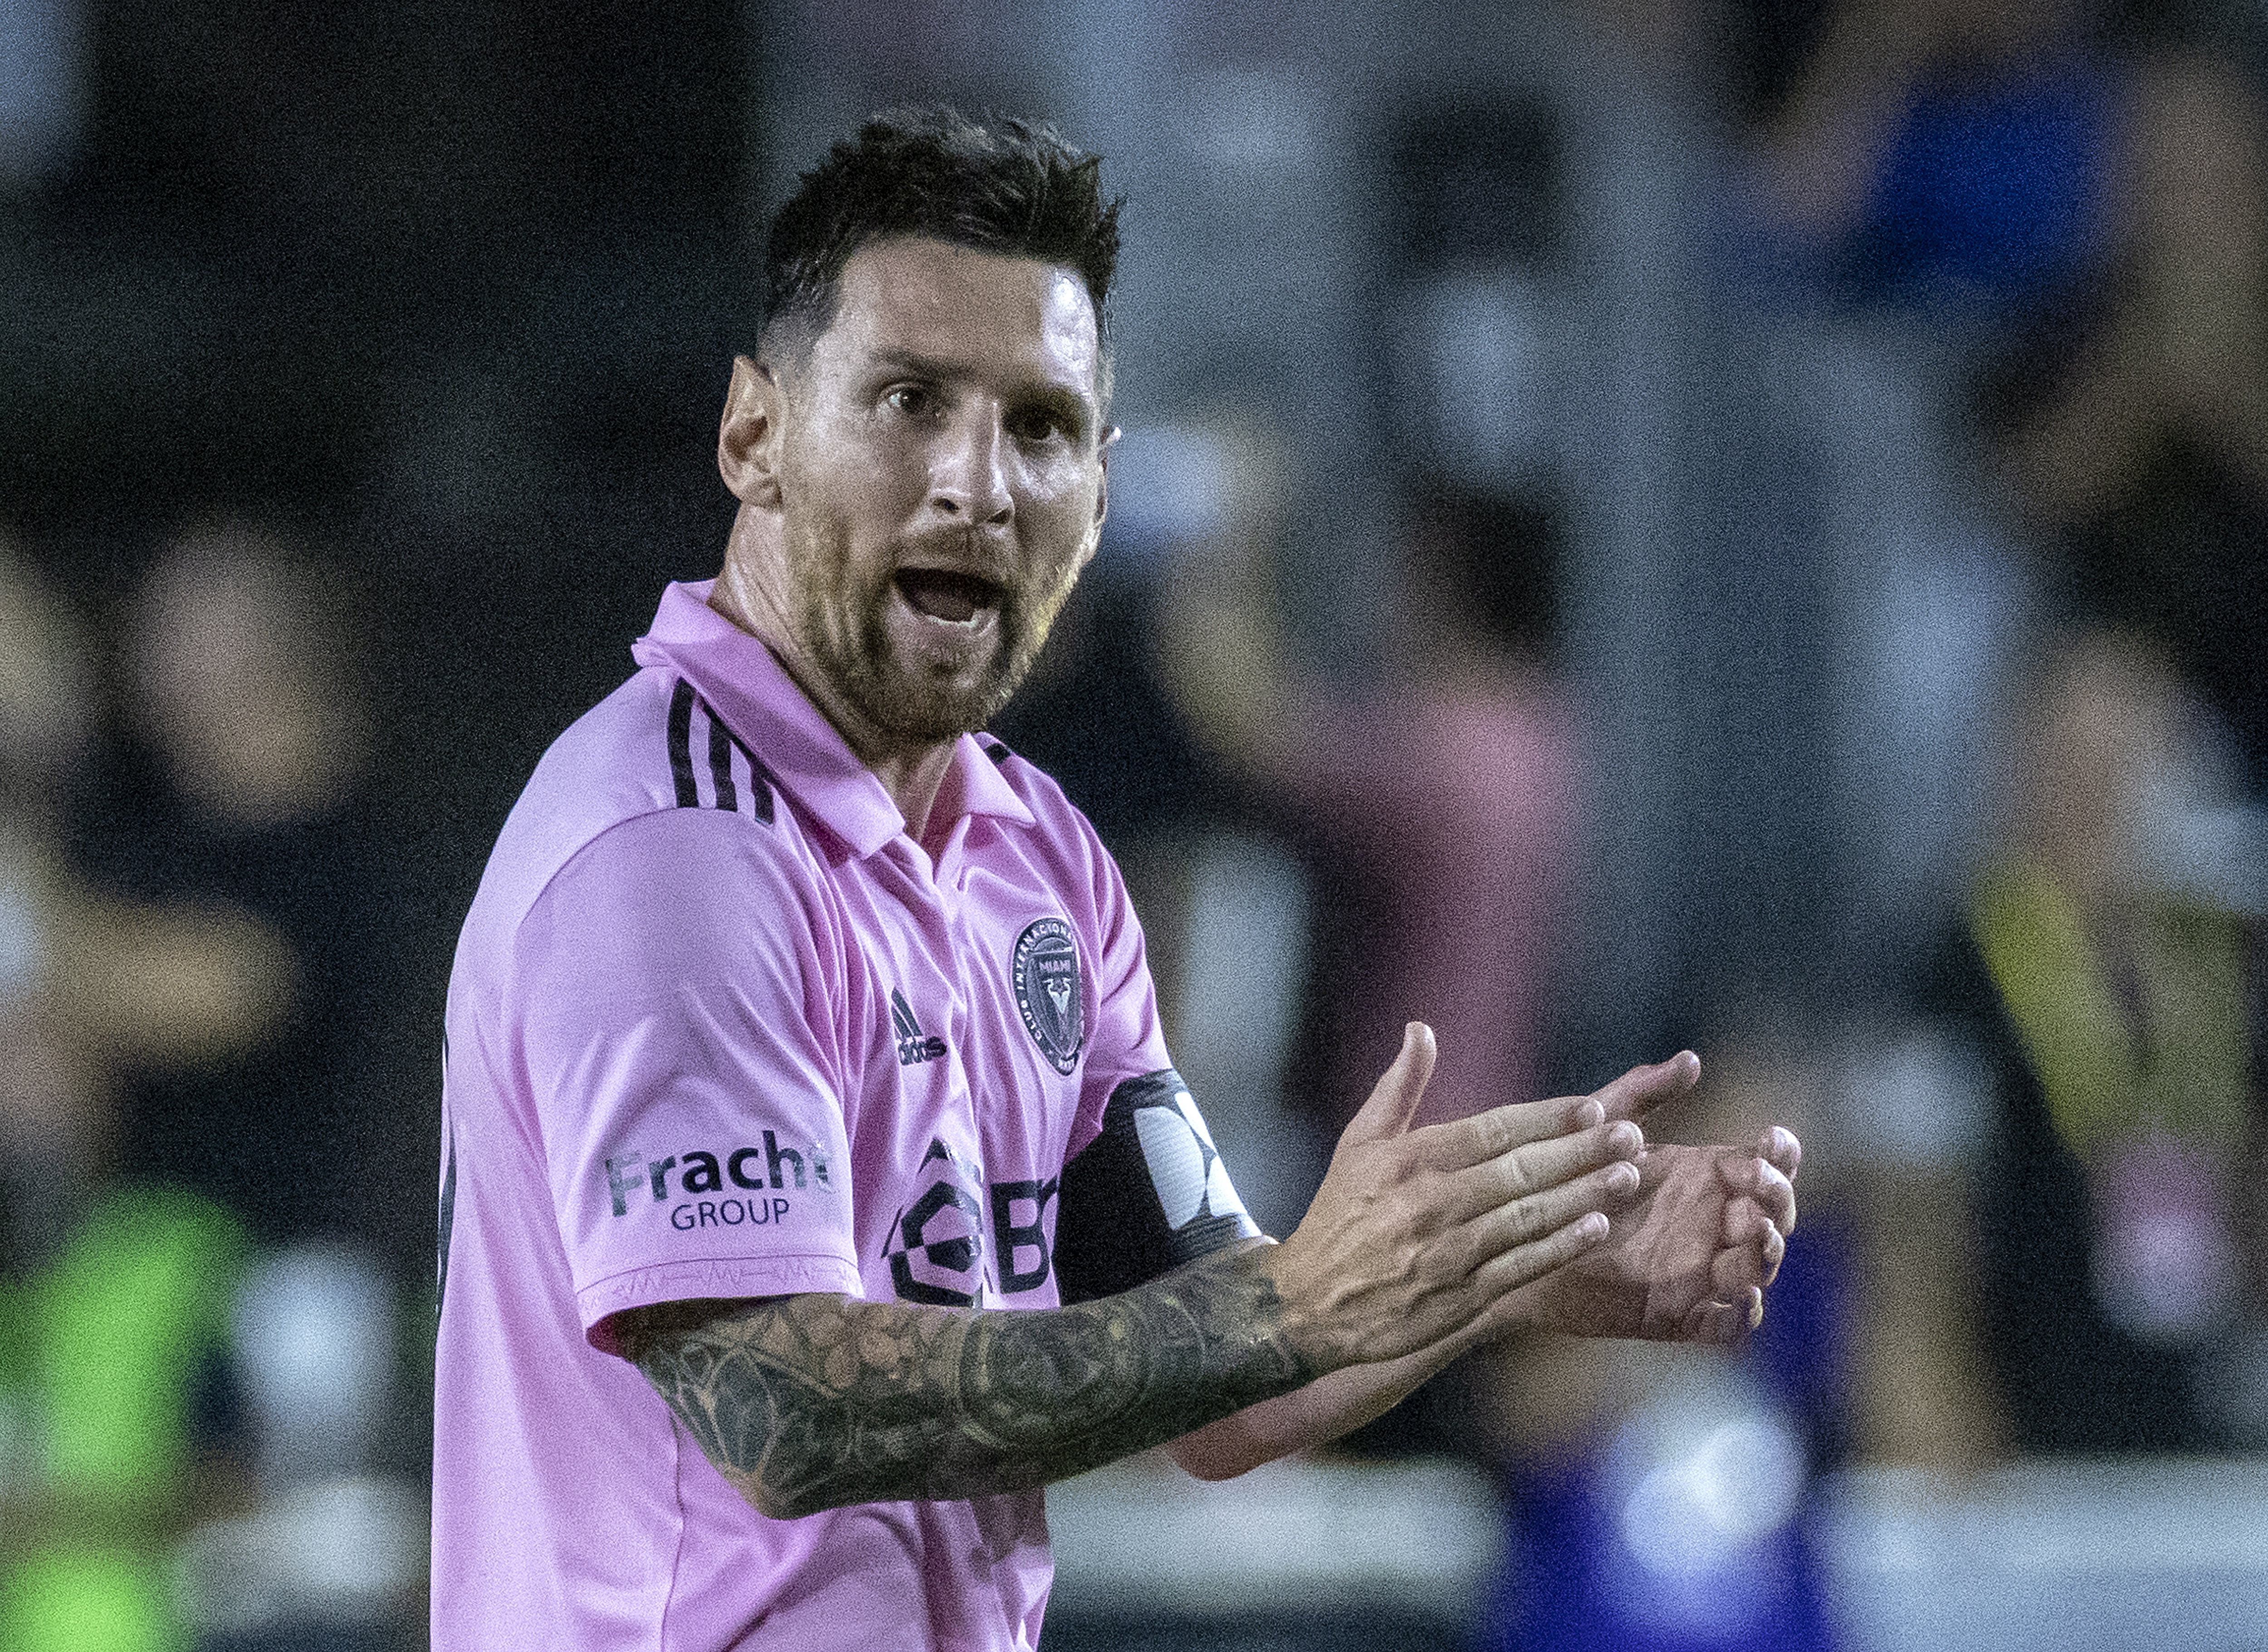 Inter Miami revela primeiras imagens de Messi com camisa do clube